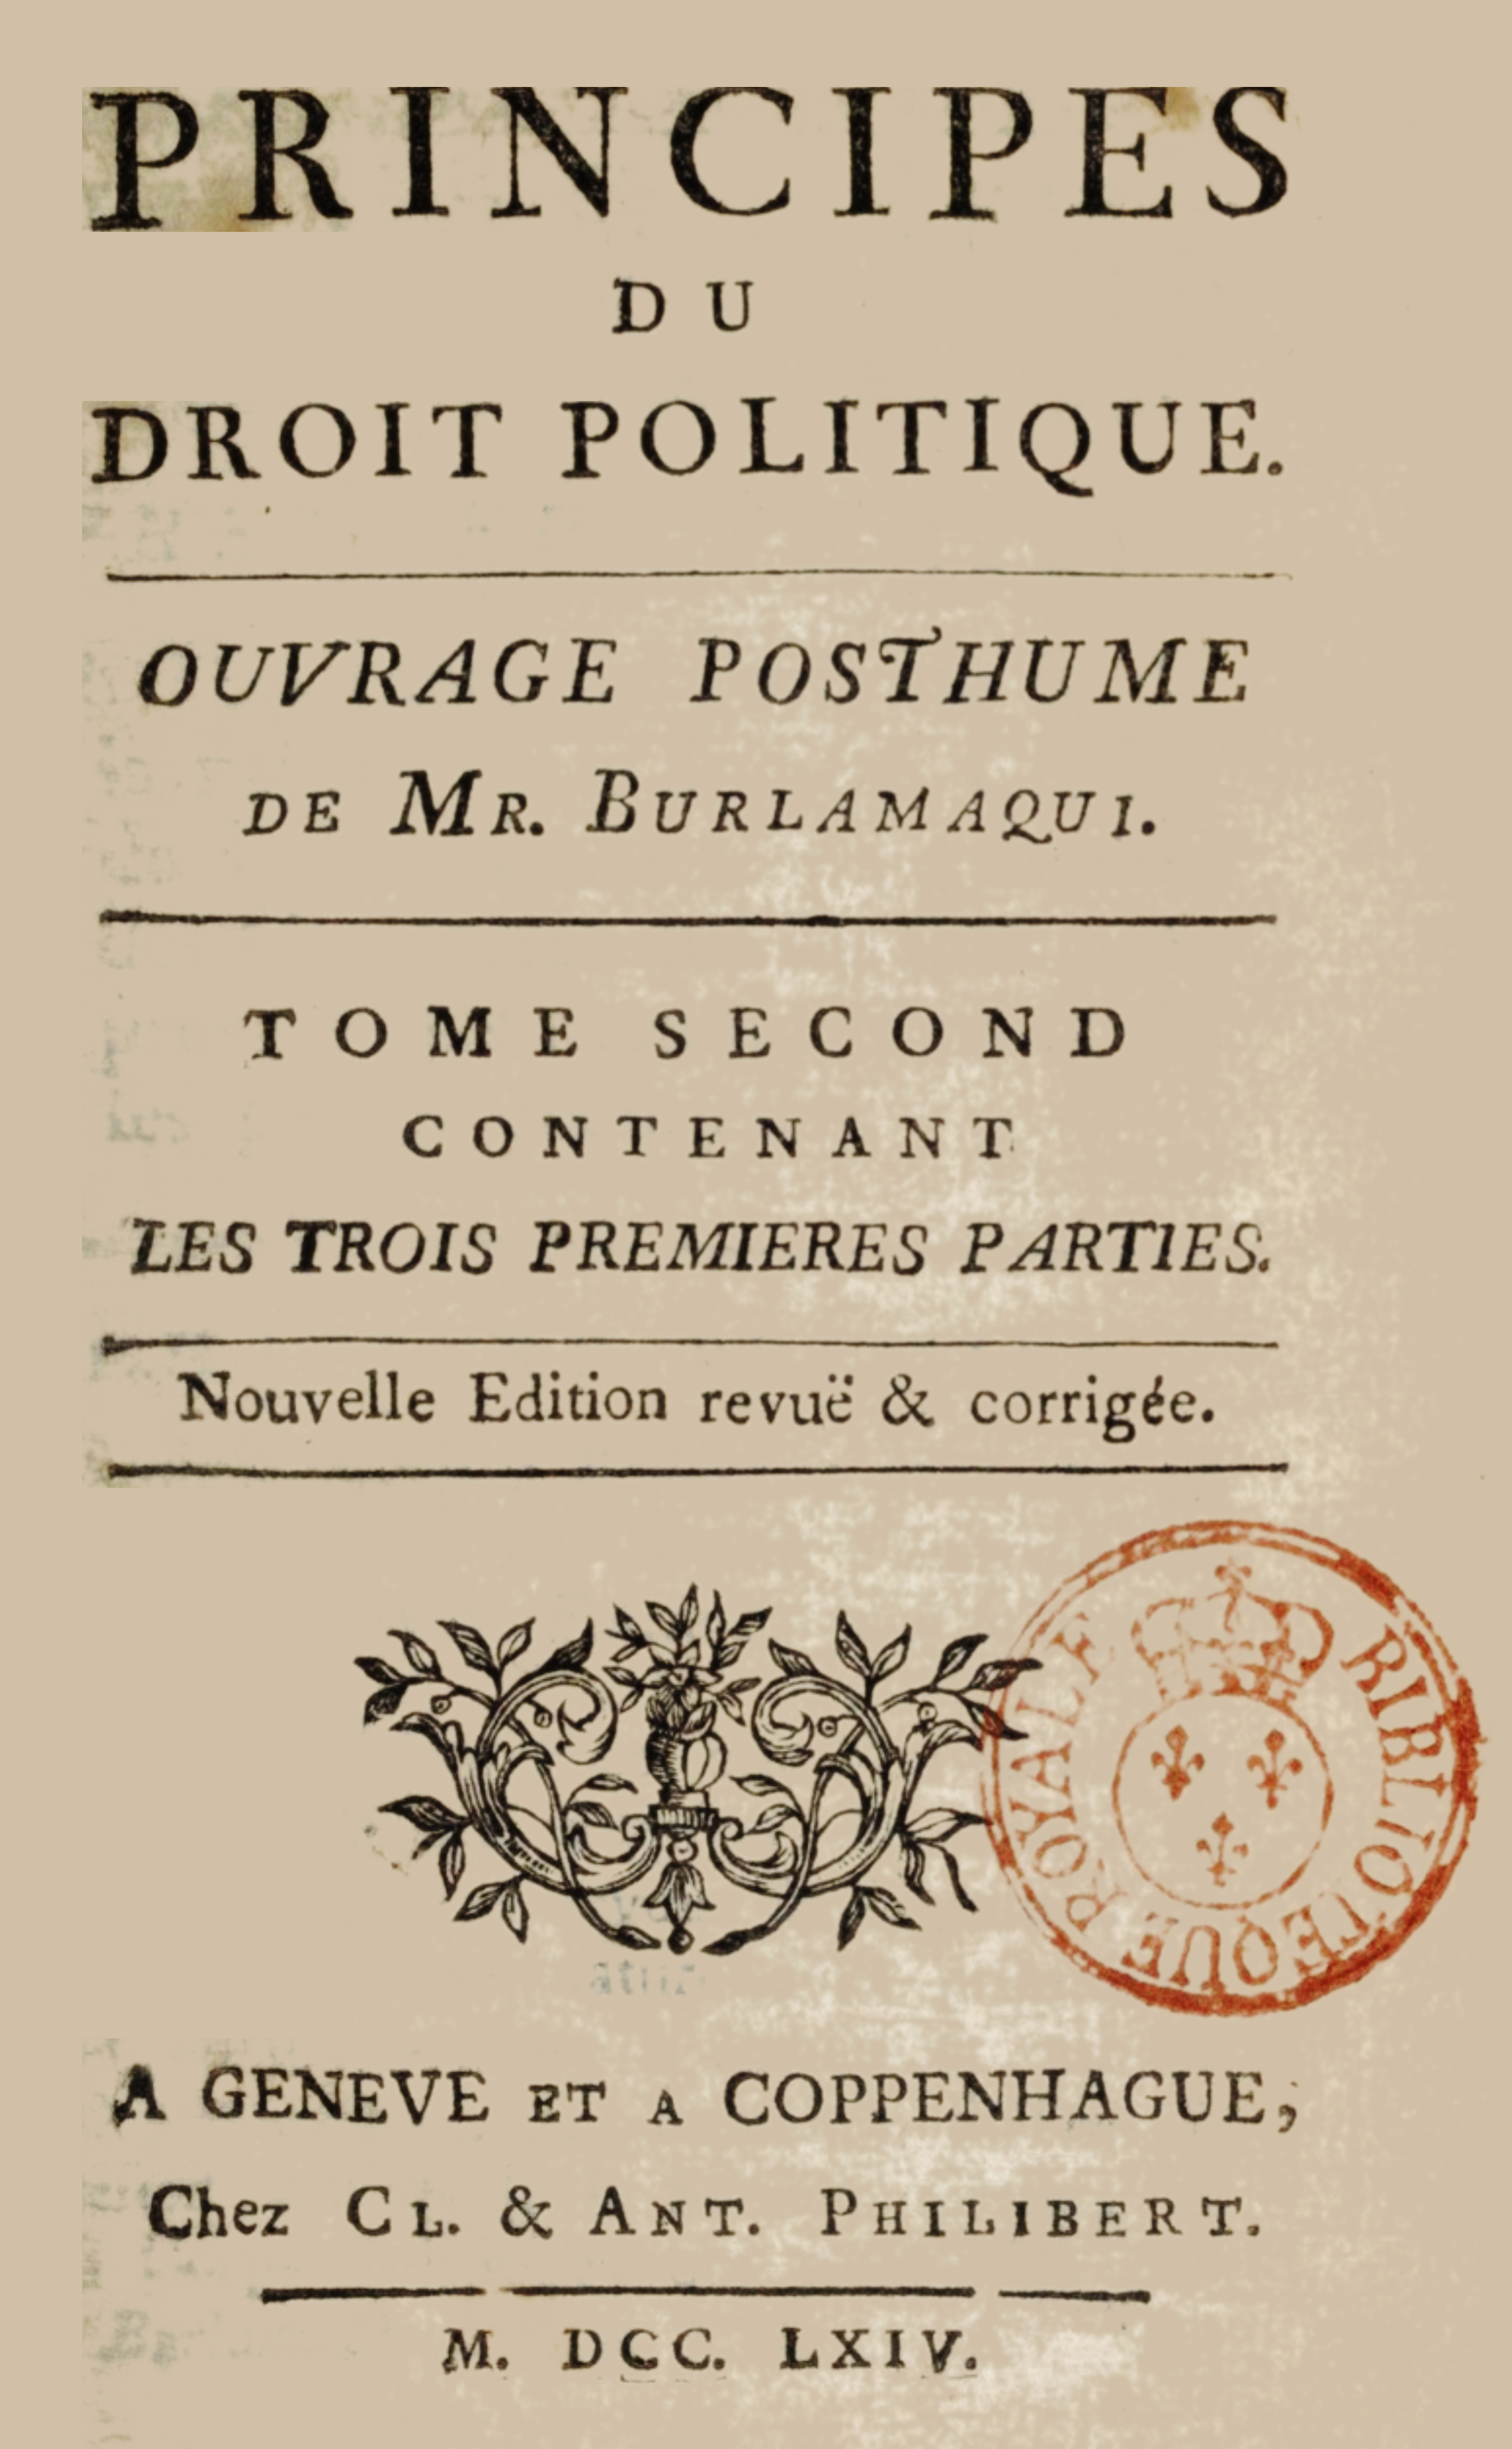 Portada de la obra de Jean-Jacques Burlamaqui "Principios de Derecho Político", en el original francés de 1764.